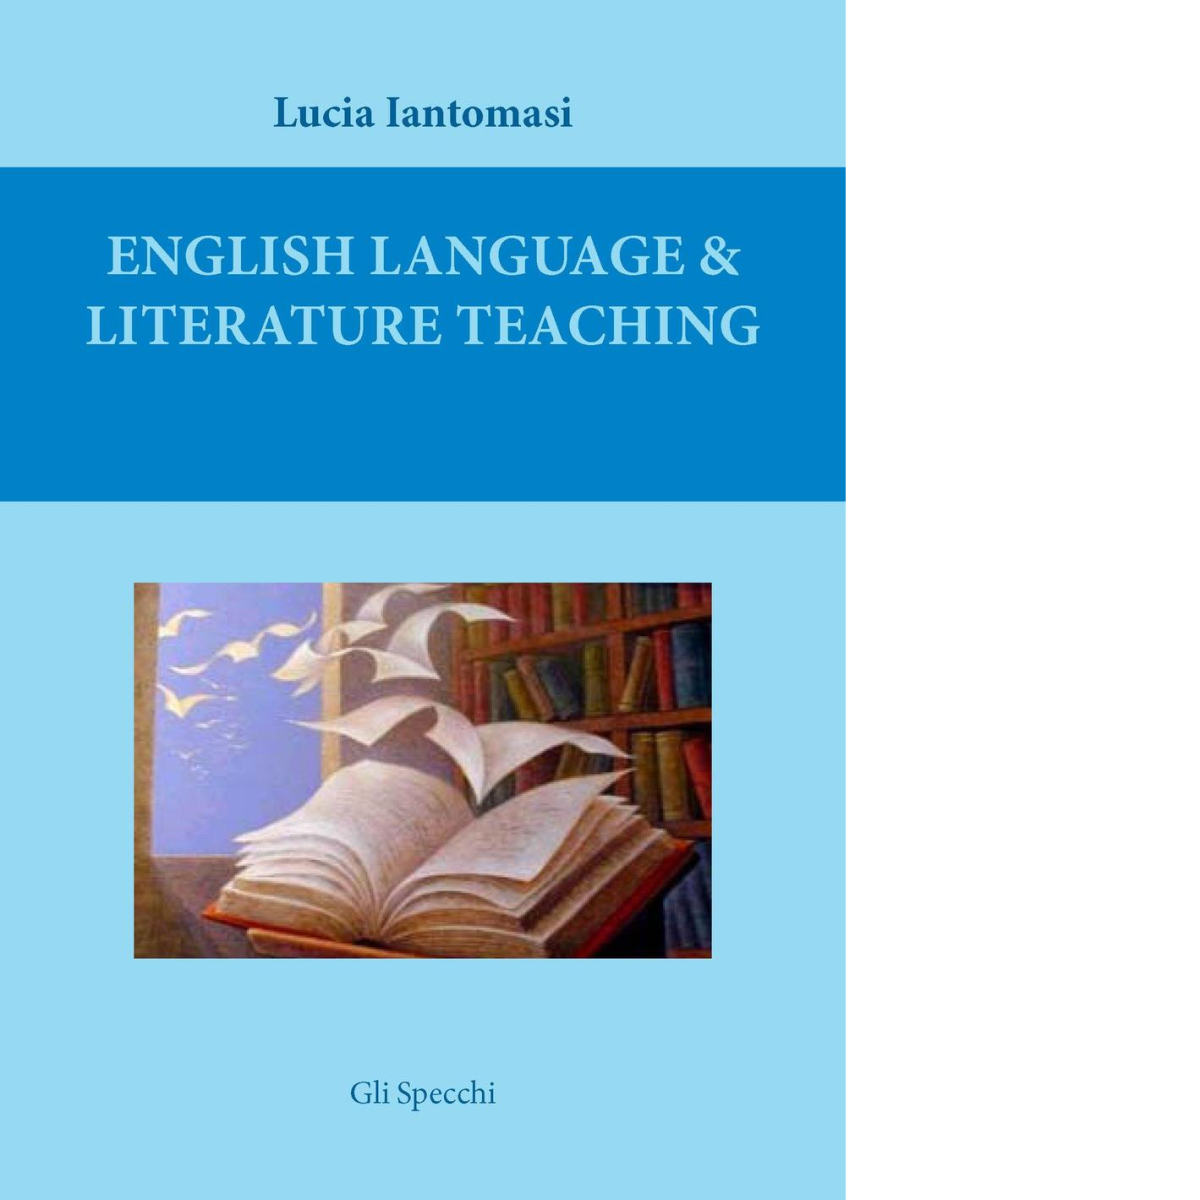 English language & literature teaching di Iantomasi Lucia - Del faro, 2016 libro usato